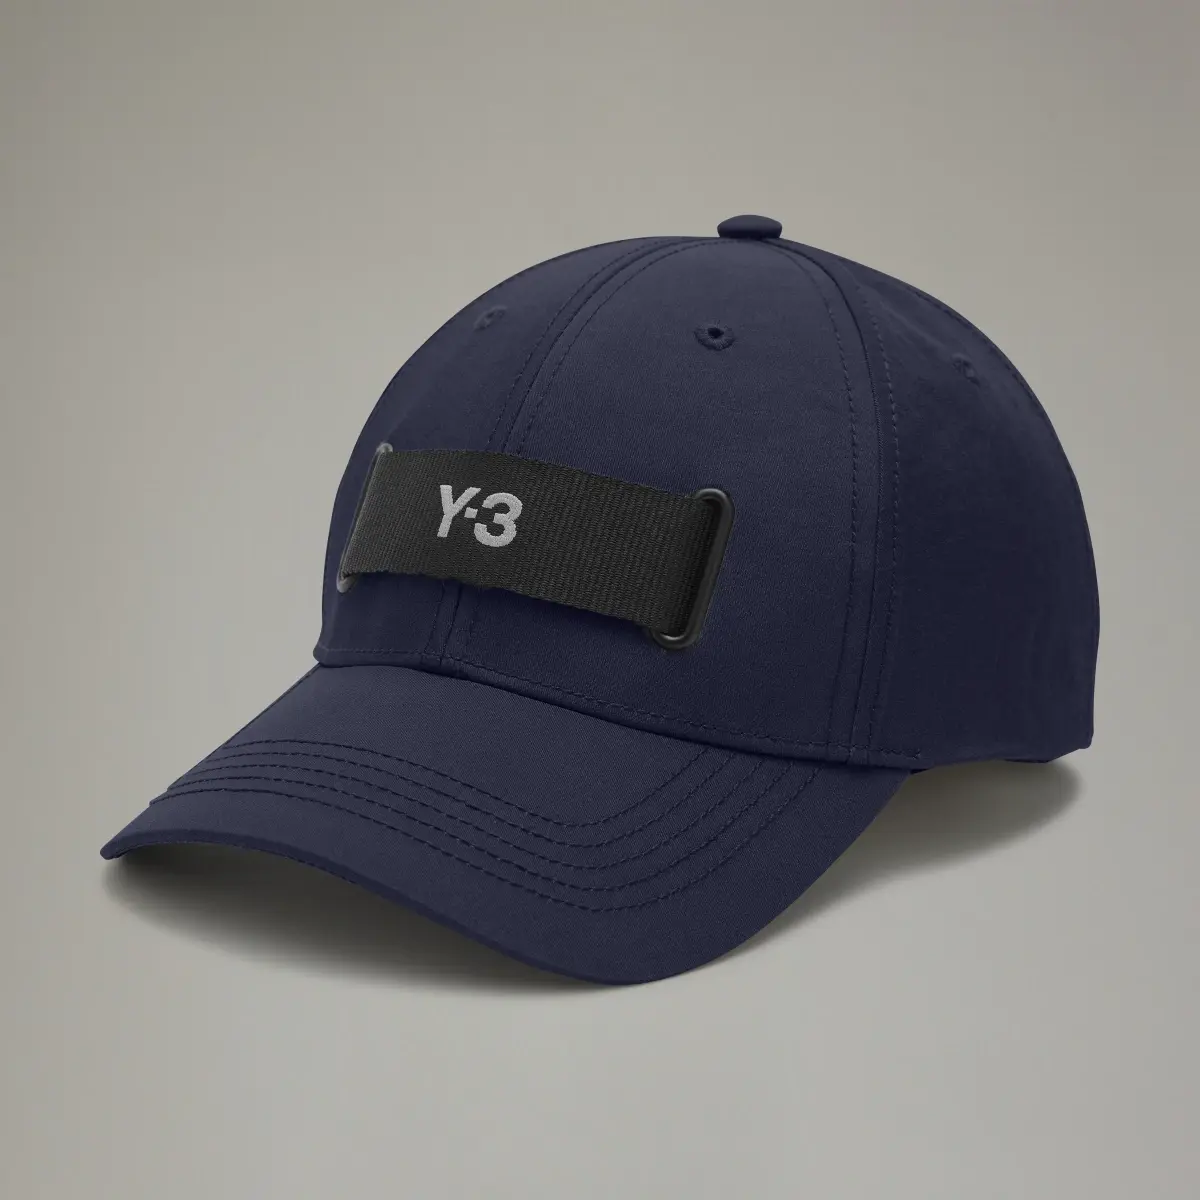 Adidas Y-3 WEBBING CAP. 2